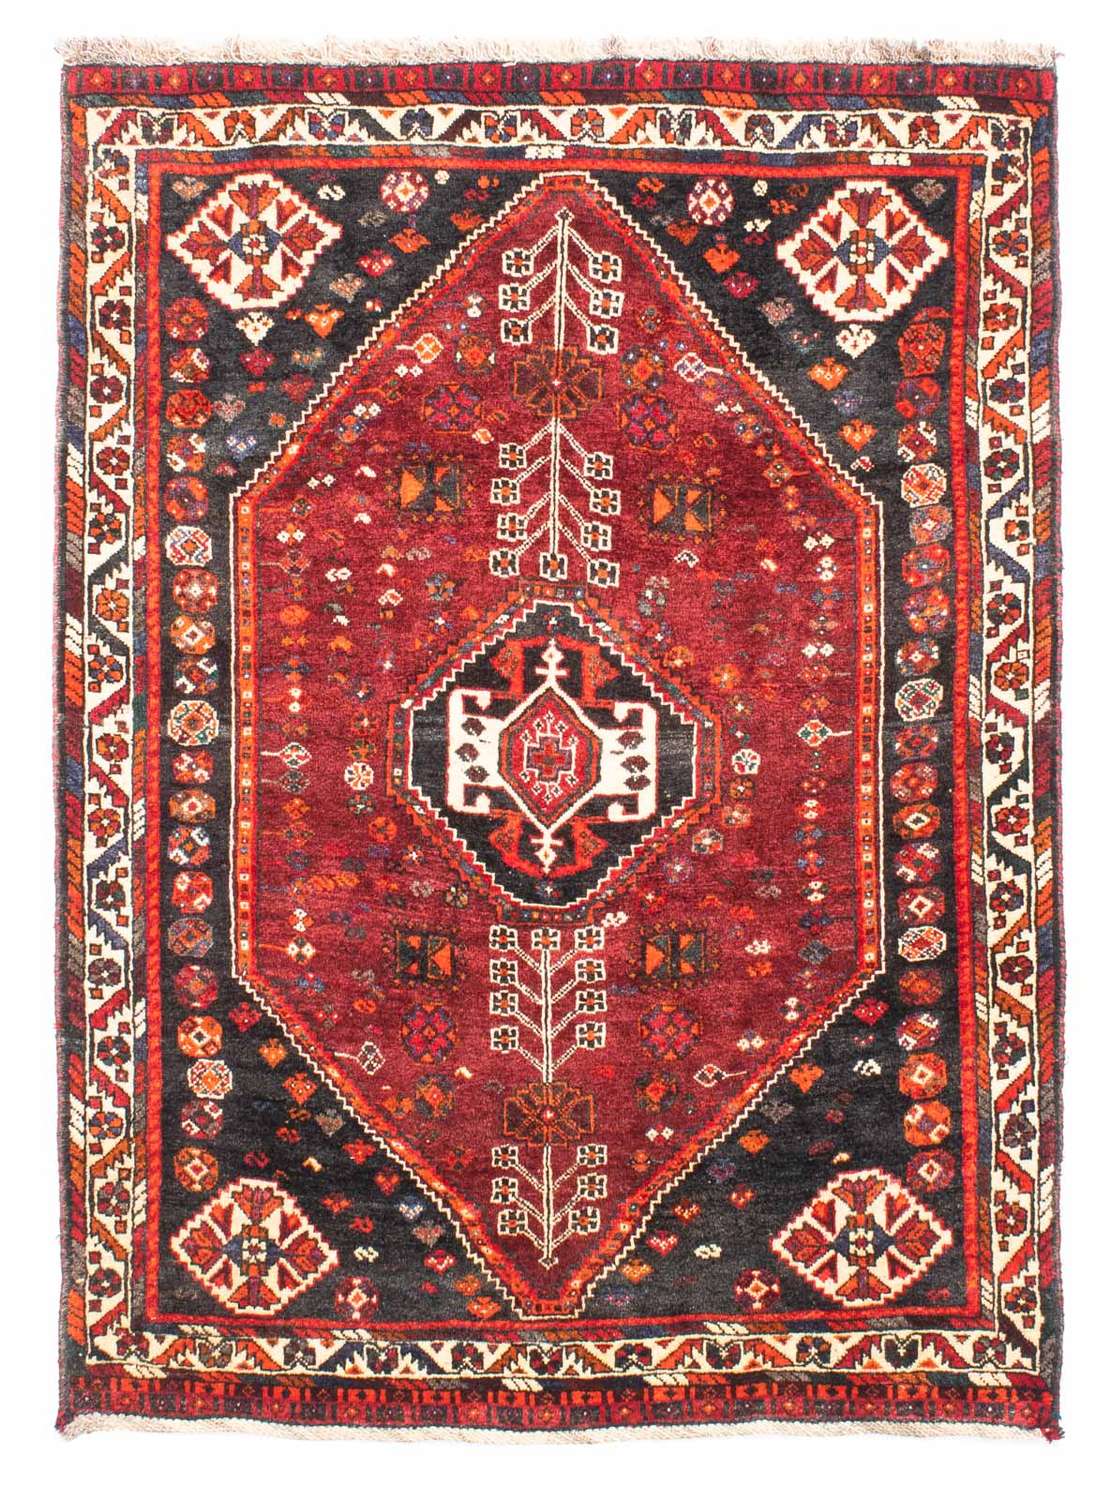 Tapis persan - Nomadic - 148 x 108 cm - rouge foncé